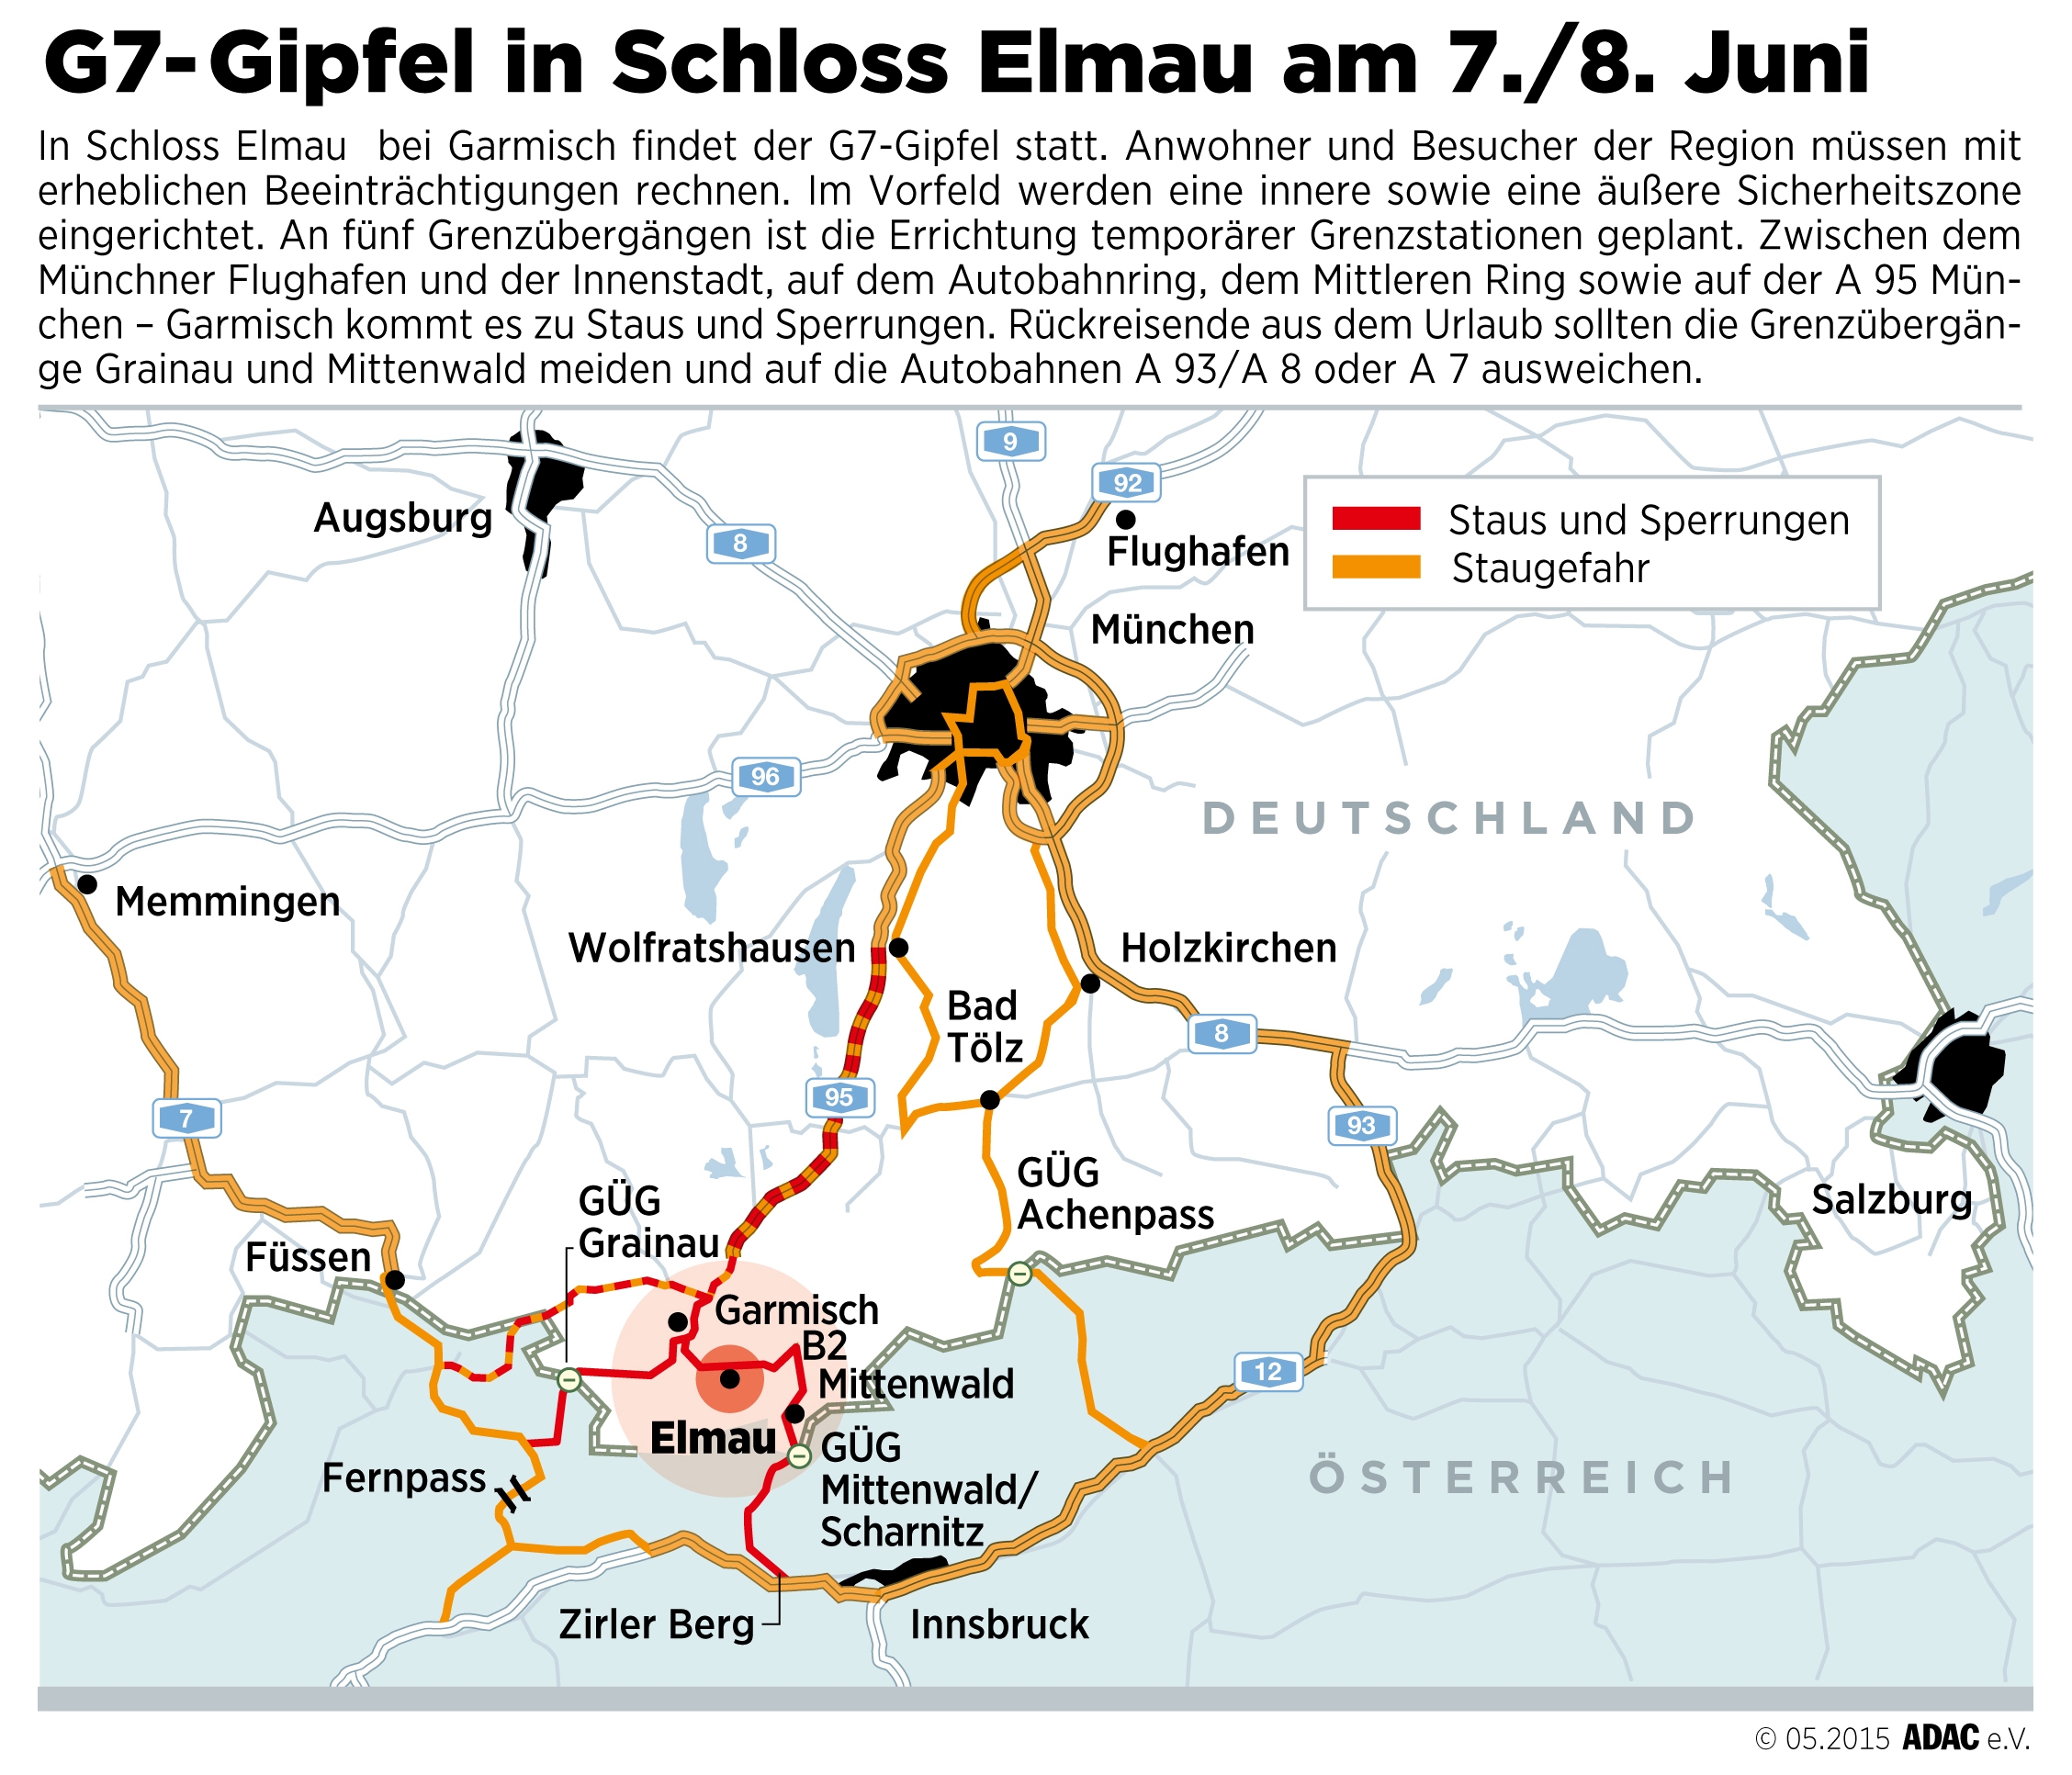 Staus, Sperren und Kontrollen rund um den G7-Gipfel - Autofahrer sollten Großraum Garmisch zwischen dem 6. und dem 8. Juni meiden - ADAC empfiehlt Urlaubern großräumige Umfahrung